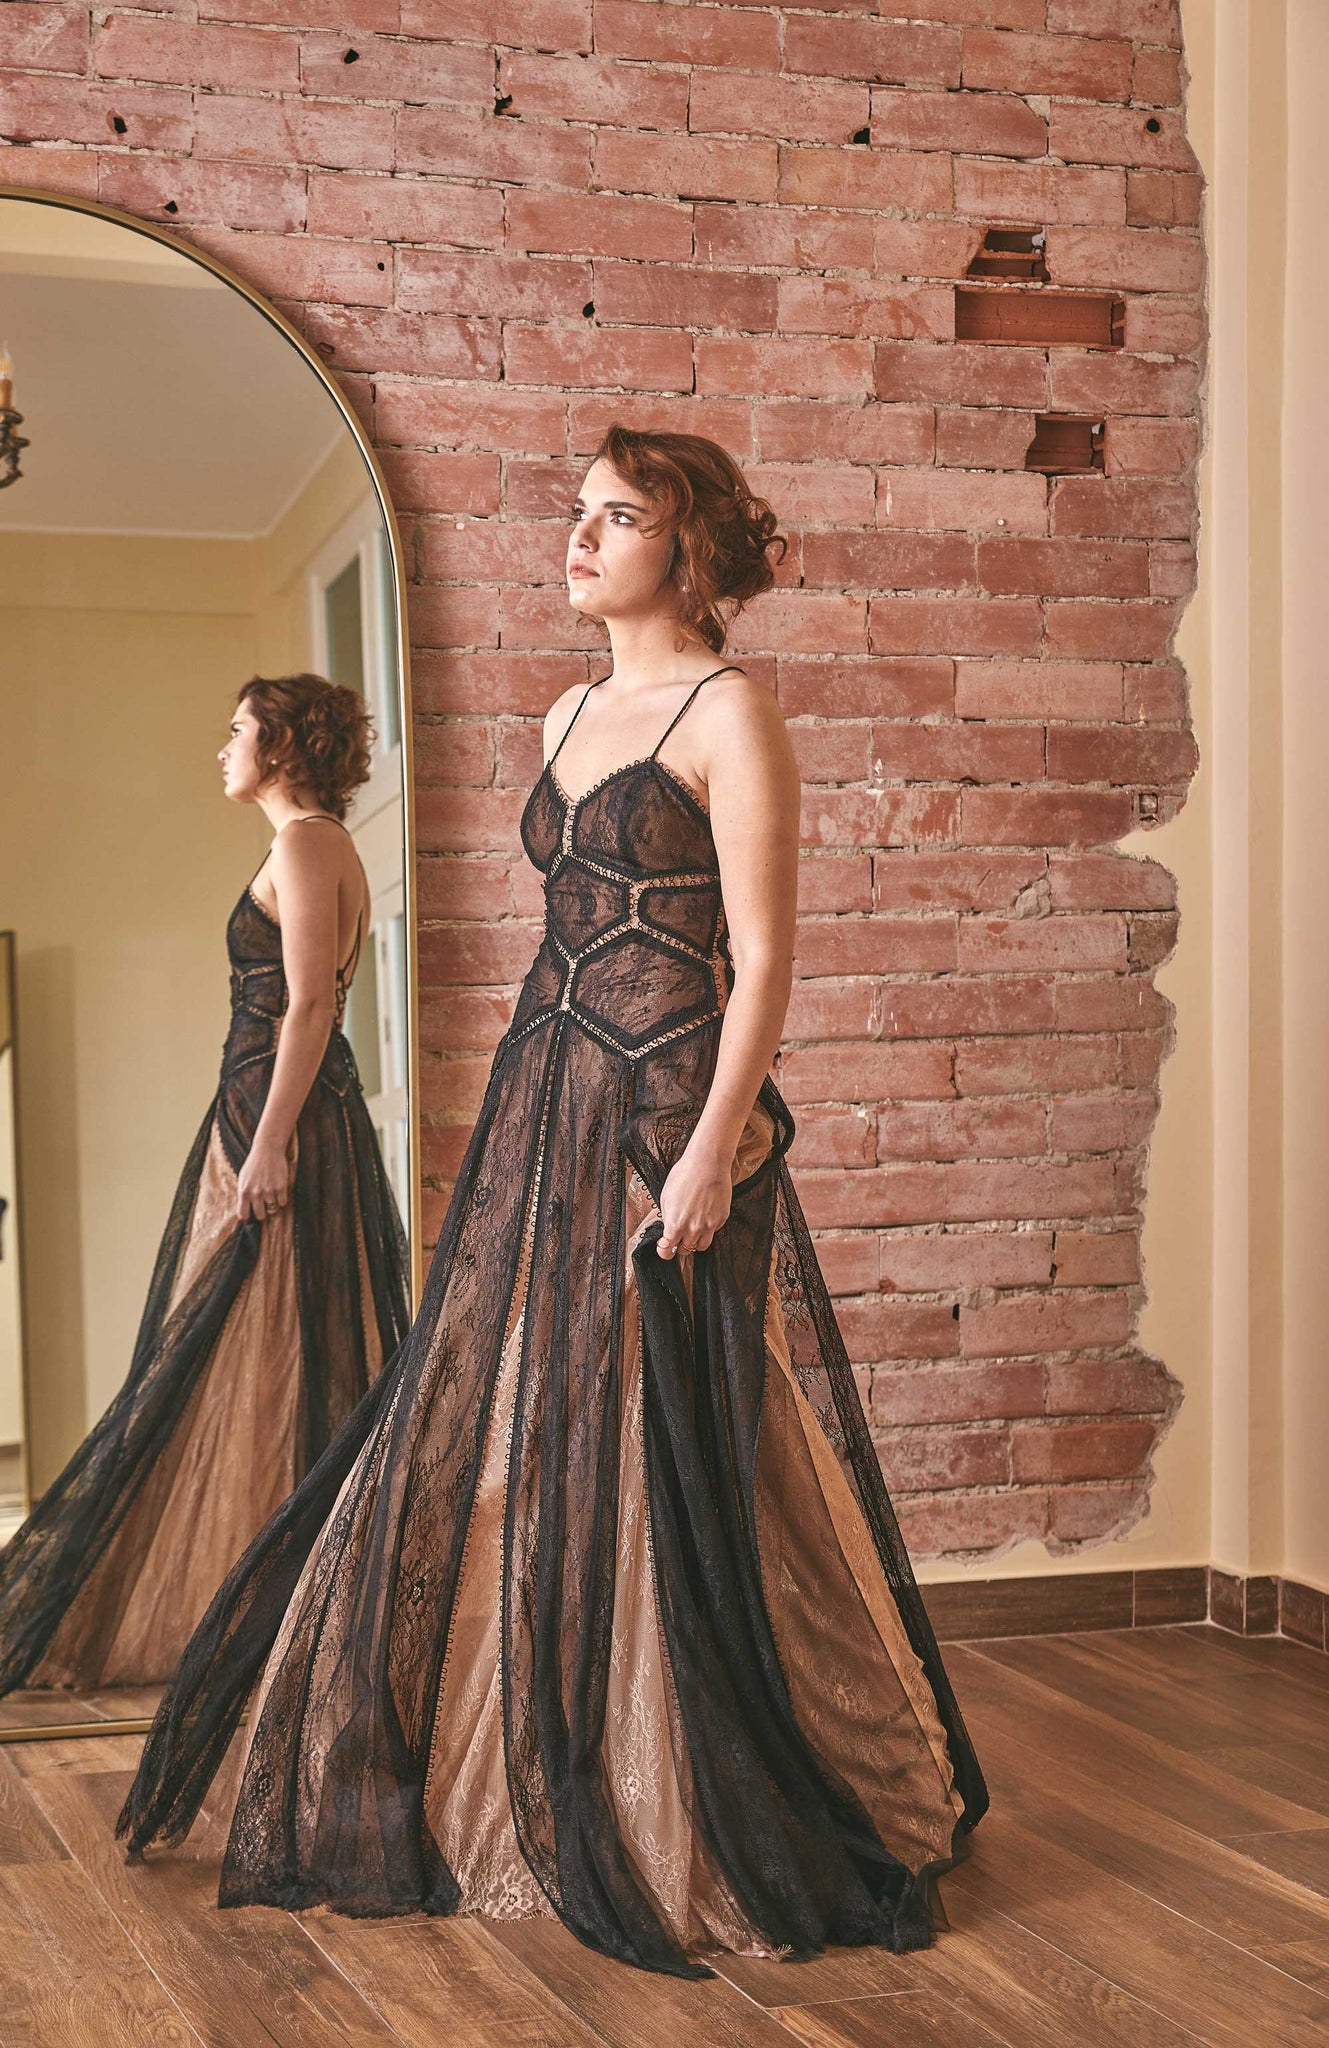 RoubaG Black Lace Dress: A Fashion-forward Attire for Elegant Evening Wear